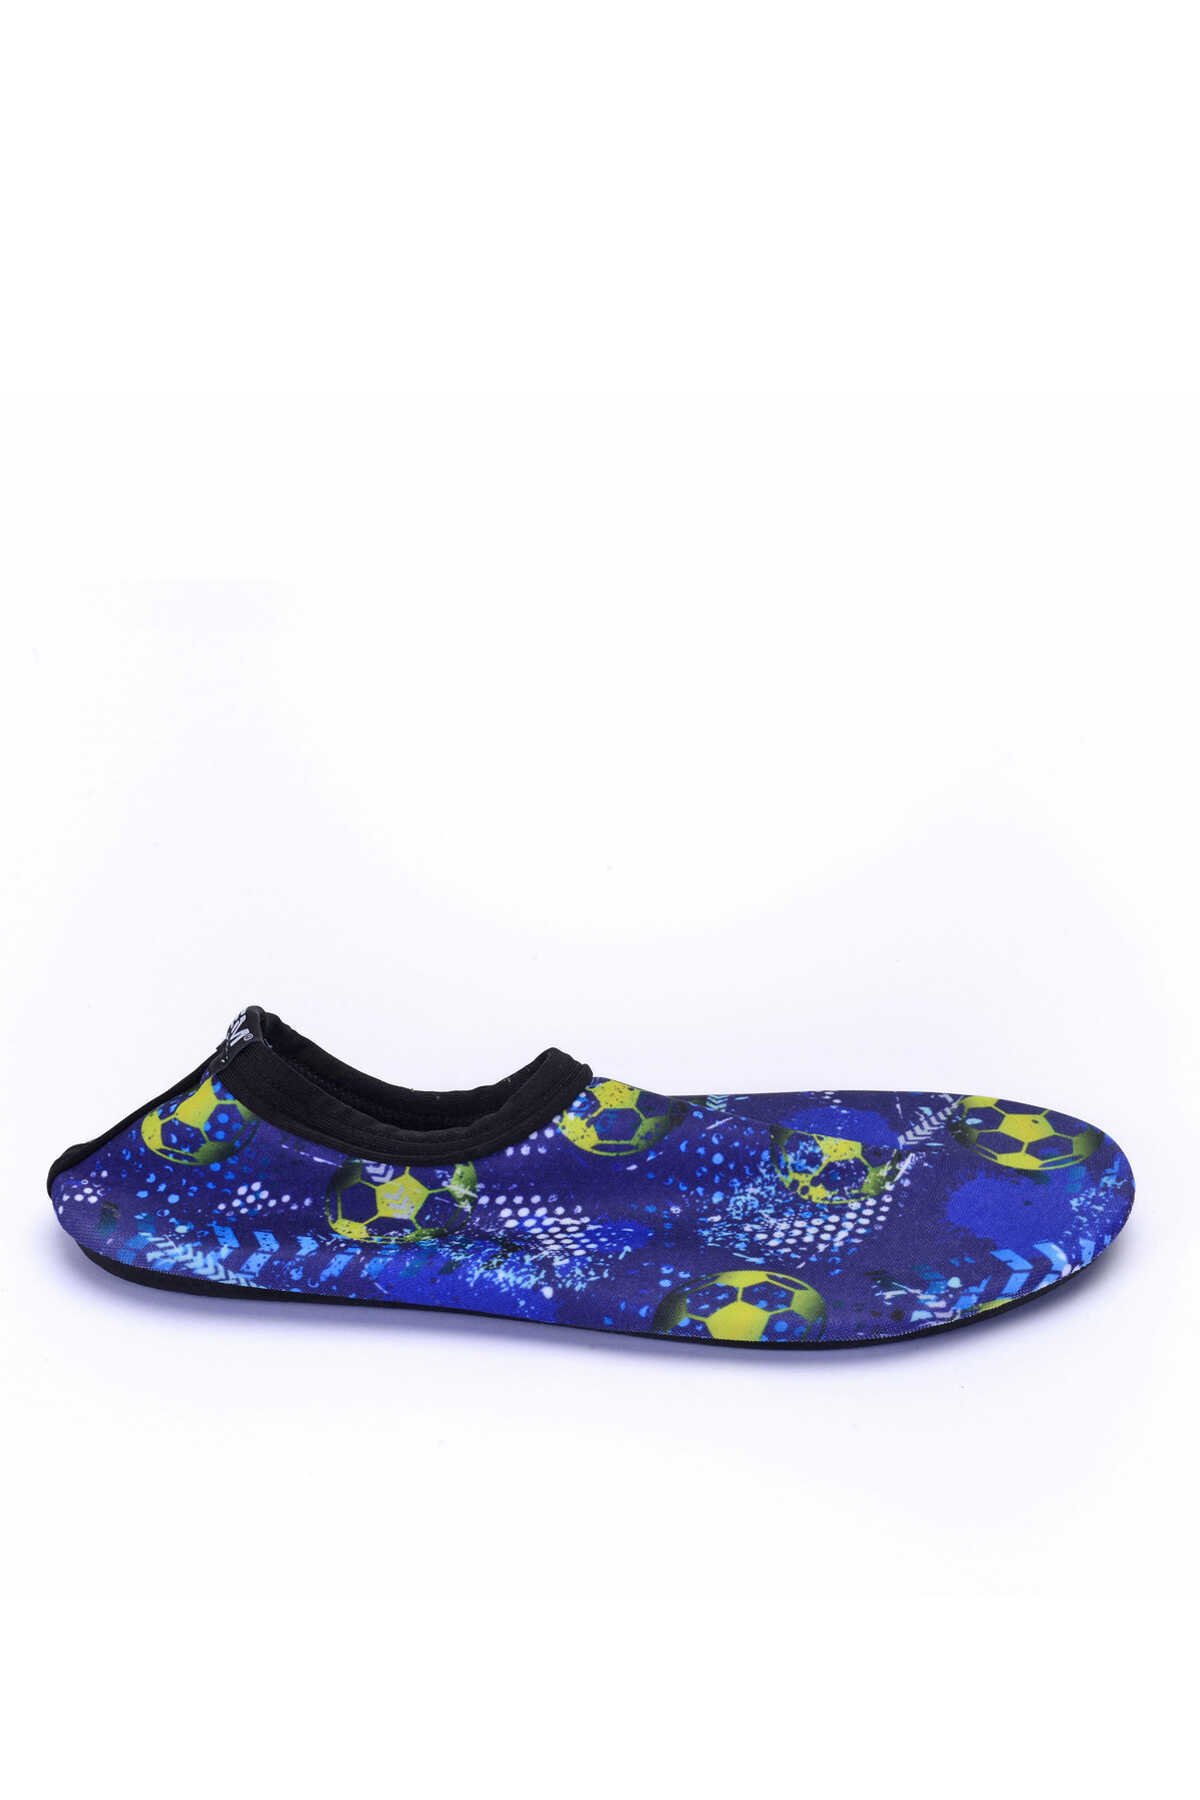 ESEM - ESEM SAVANA Deniz Ayakkabısı Erkek Çocuk Ayakkabı Lacivert / Sarı